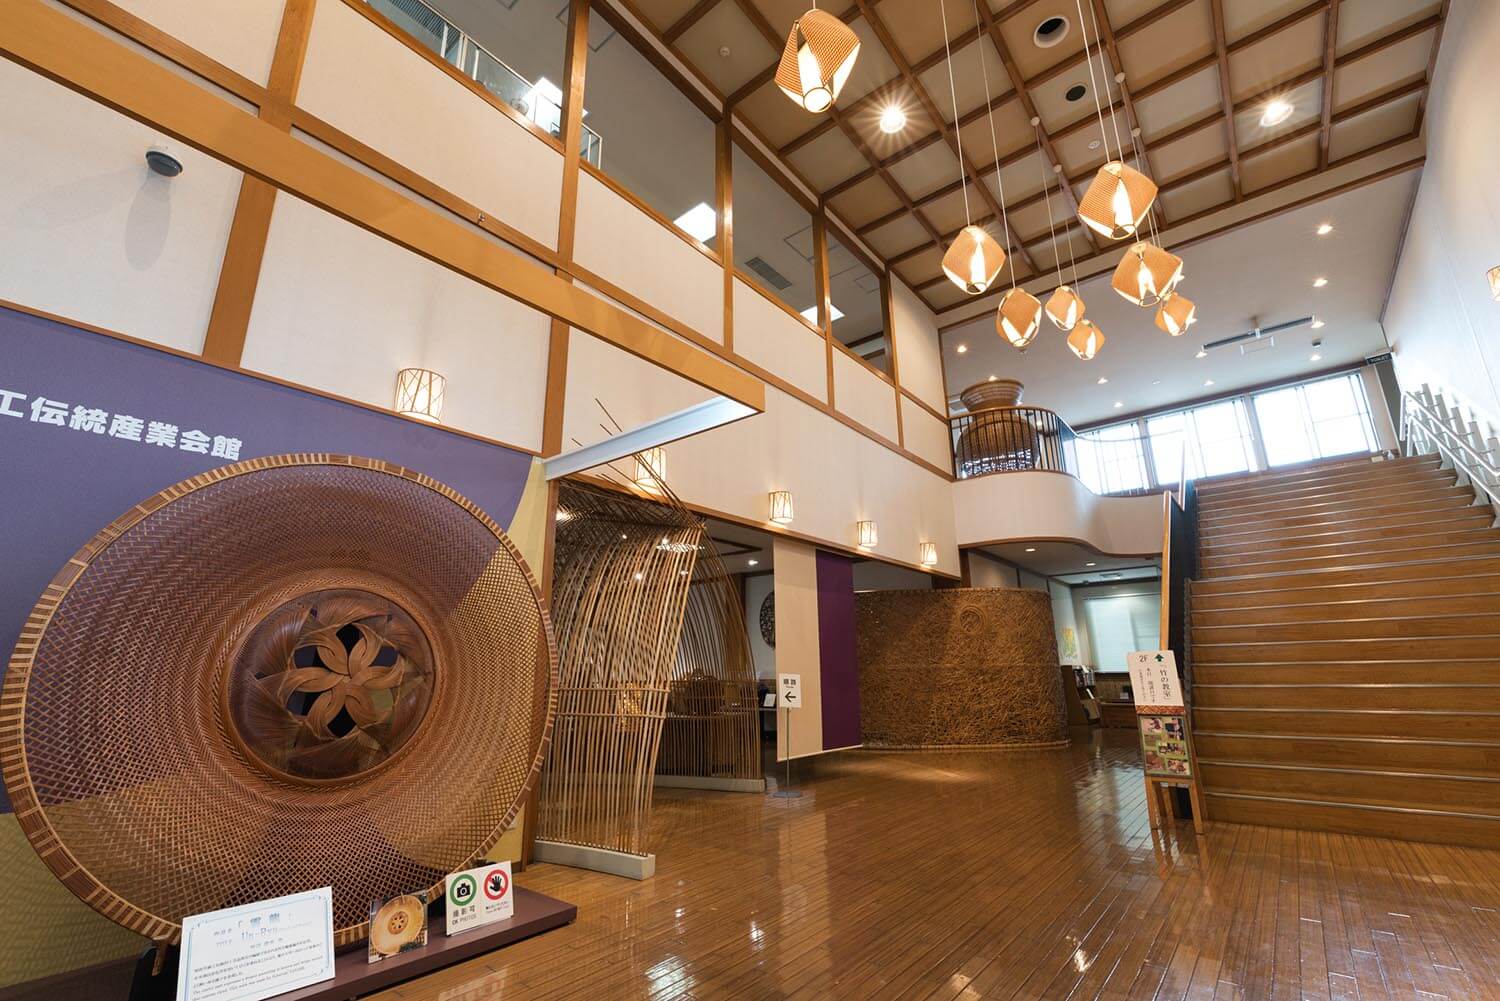 天井が高く開放的なロビーでは、背よりも大きな竹のオブジェが出迎えてくれる